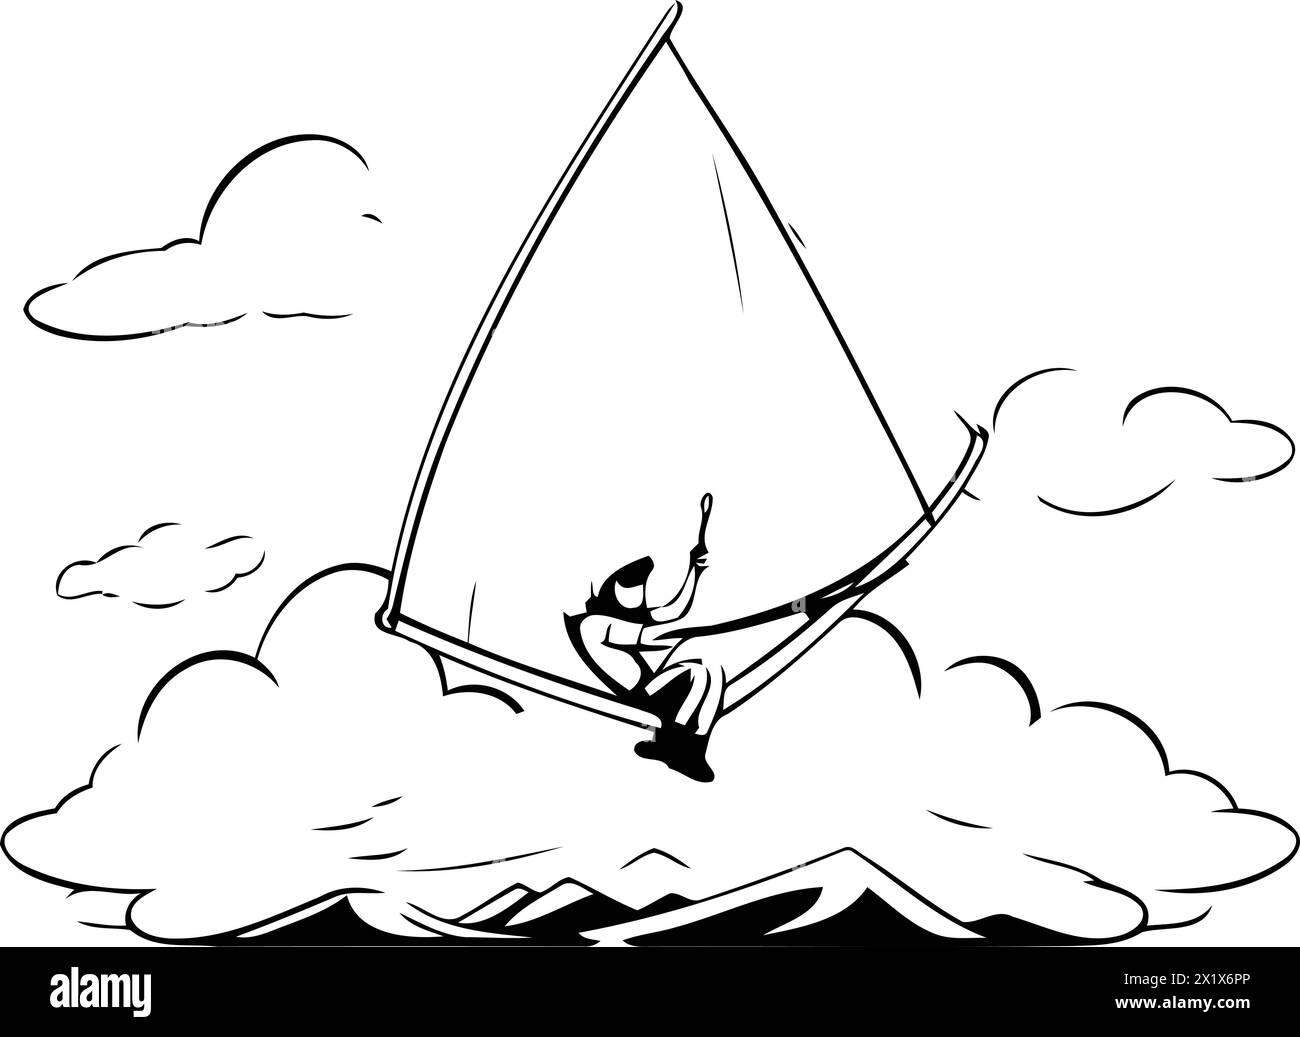 Windsurfing design over white background. vector illustration eps10 Stock Vector